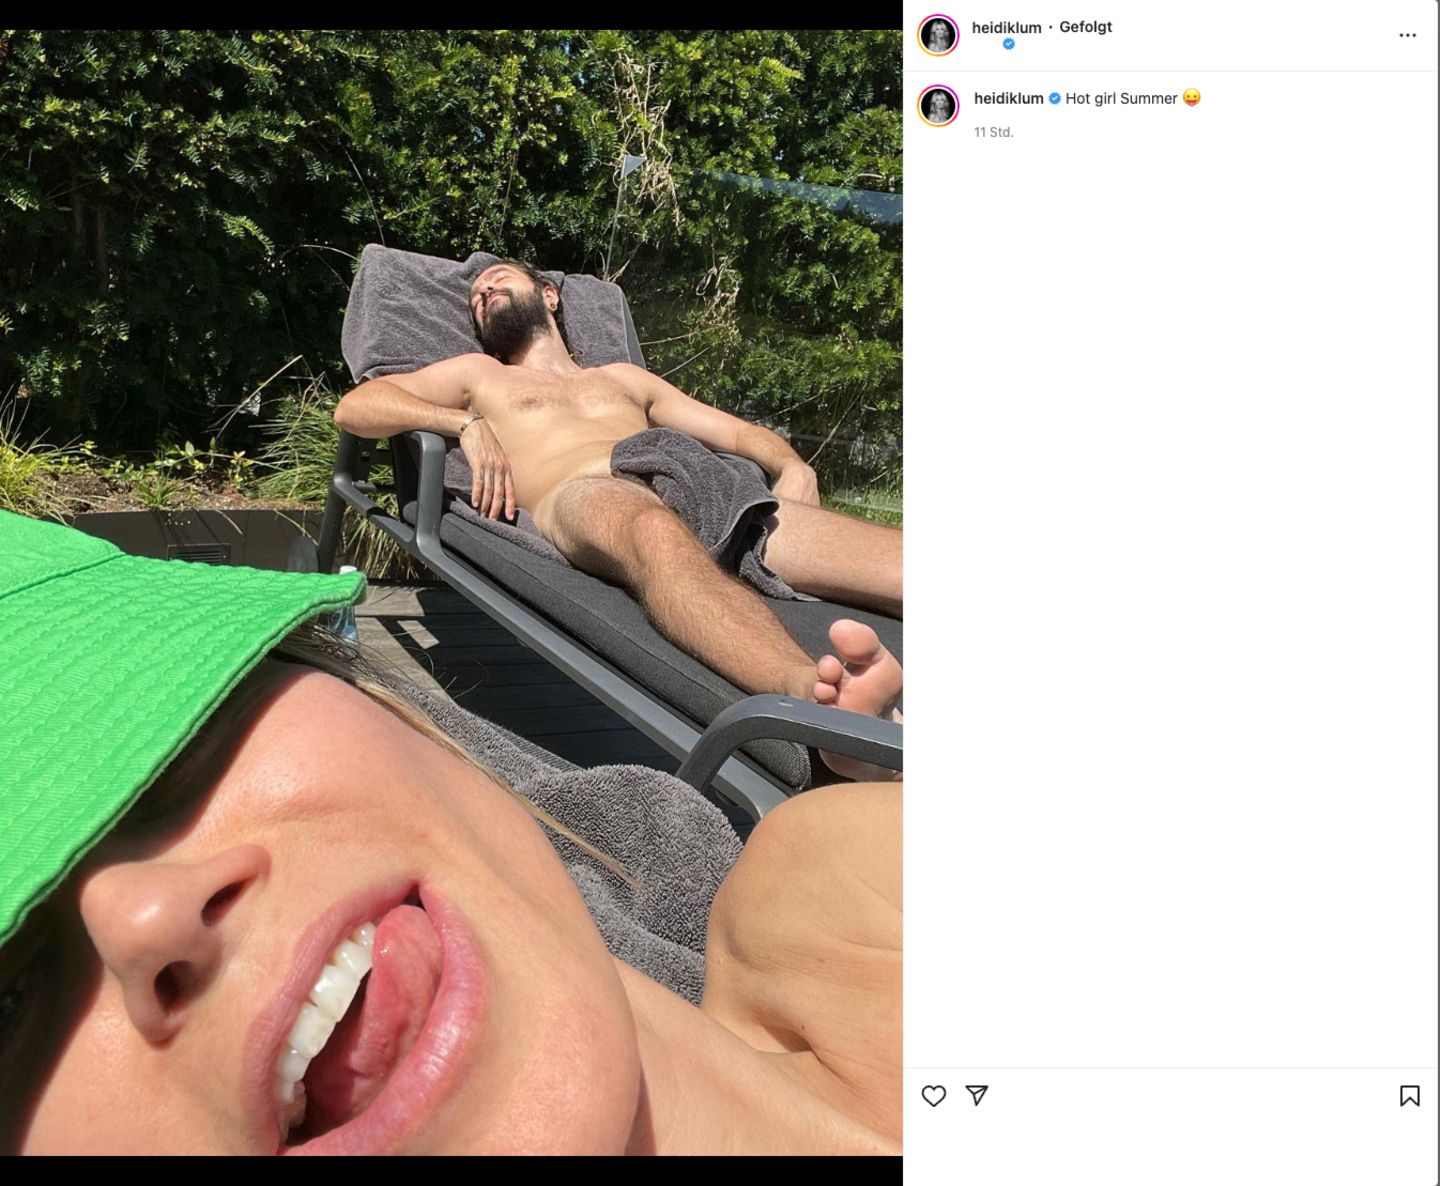 Vip-News: Heidi Klum gibt Eindruck von ihrem "Hot Girl Summer" – mit fast nacktem Tom Kaulitz